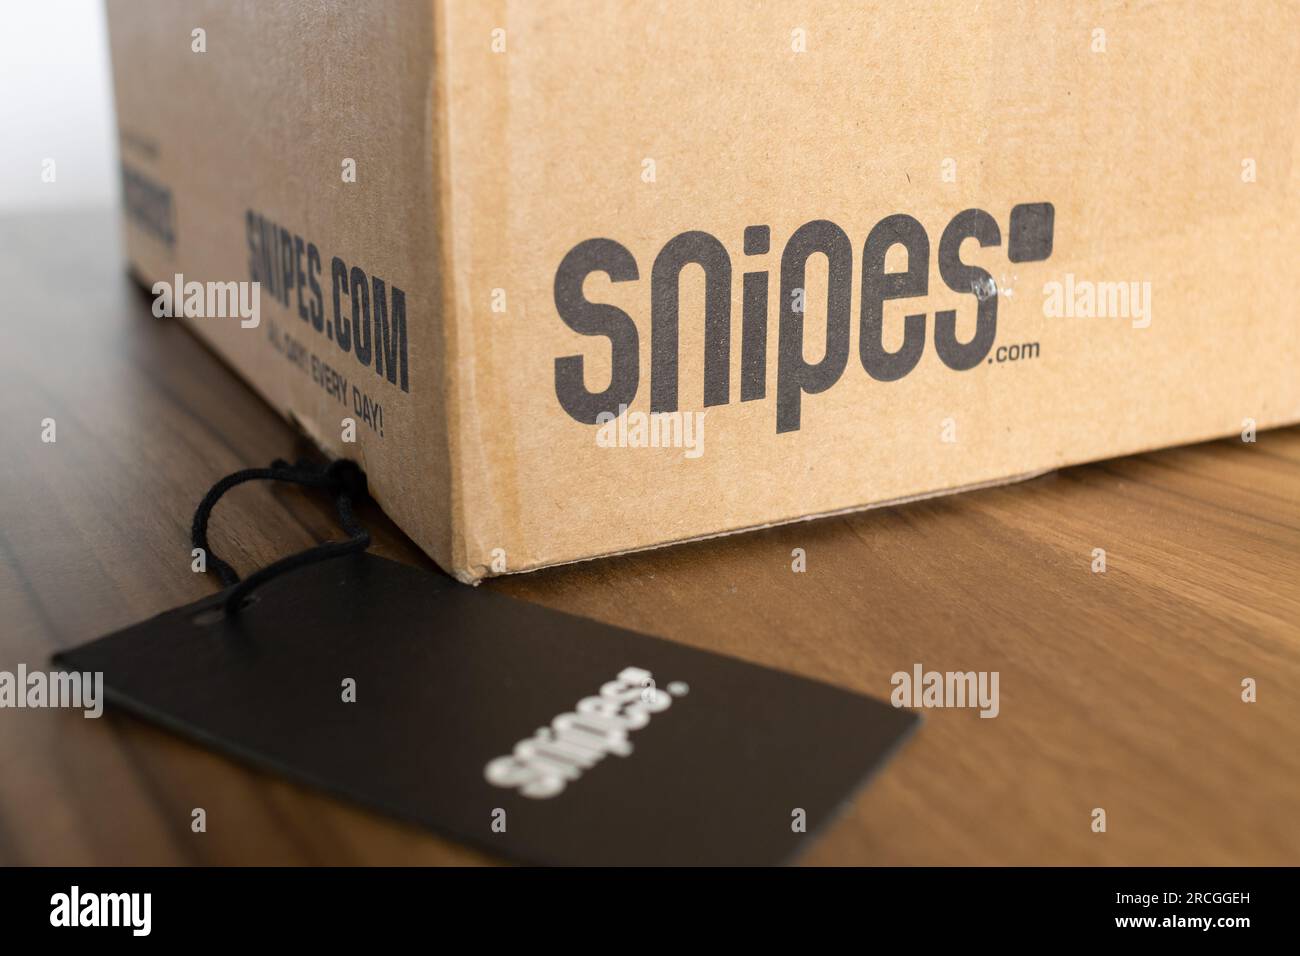 Paket mit dem Snipes Logo. Online-Shopping für Straßenmode und Bekleidung. Konsumerismus durch Geschäftsmodelle im elektronischen Handel. Stockfoto